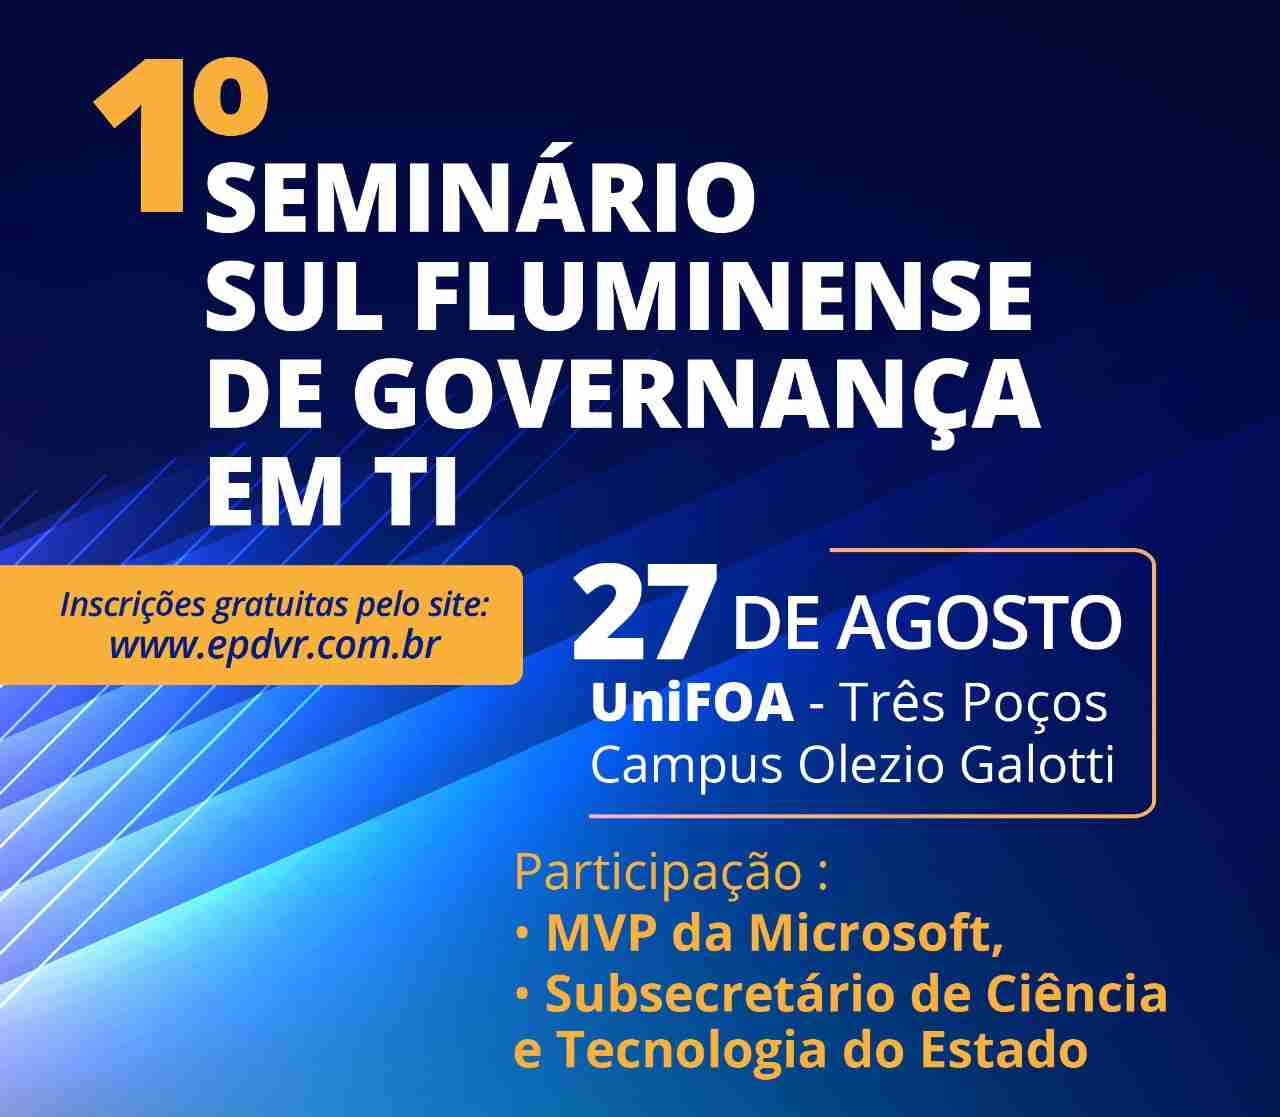 1° Seminário Sul Fluminense de Governança em TI